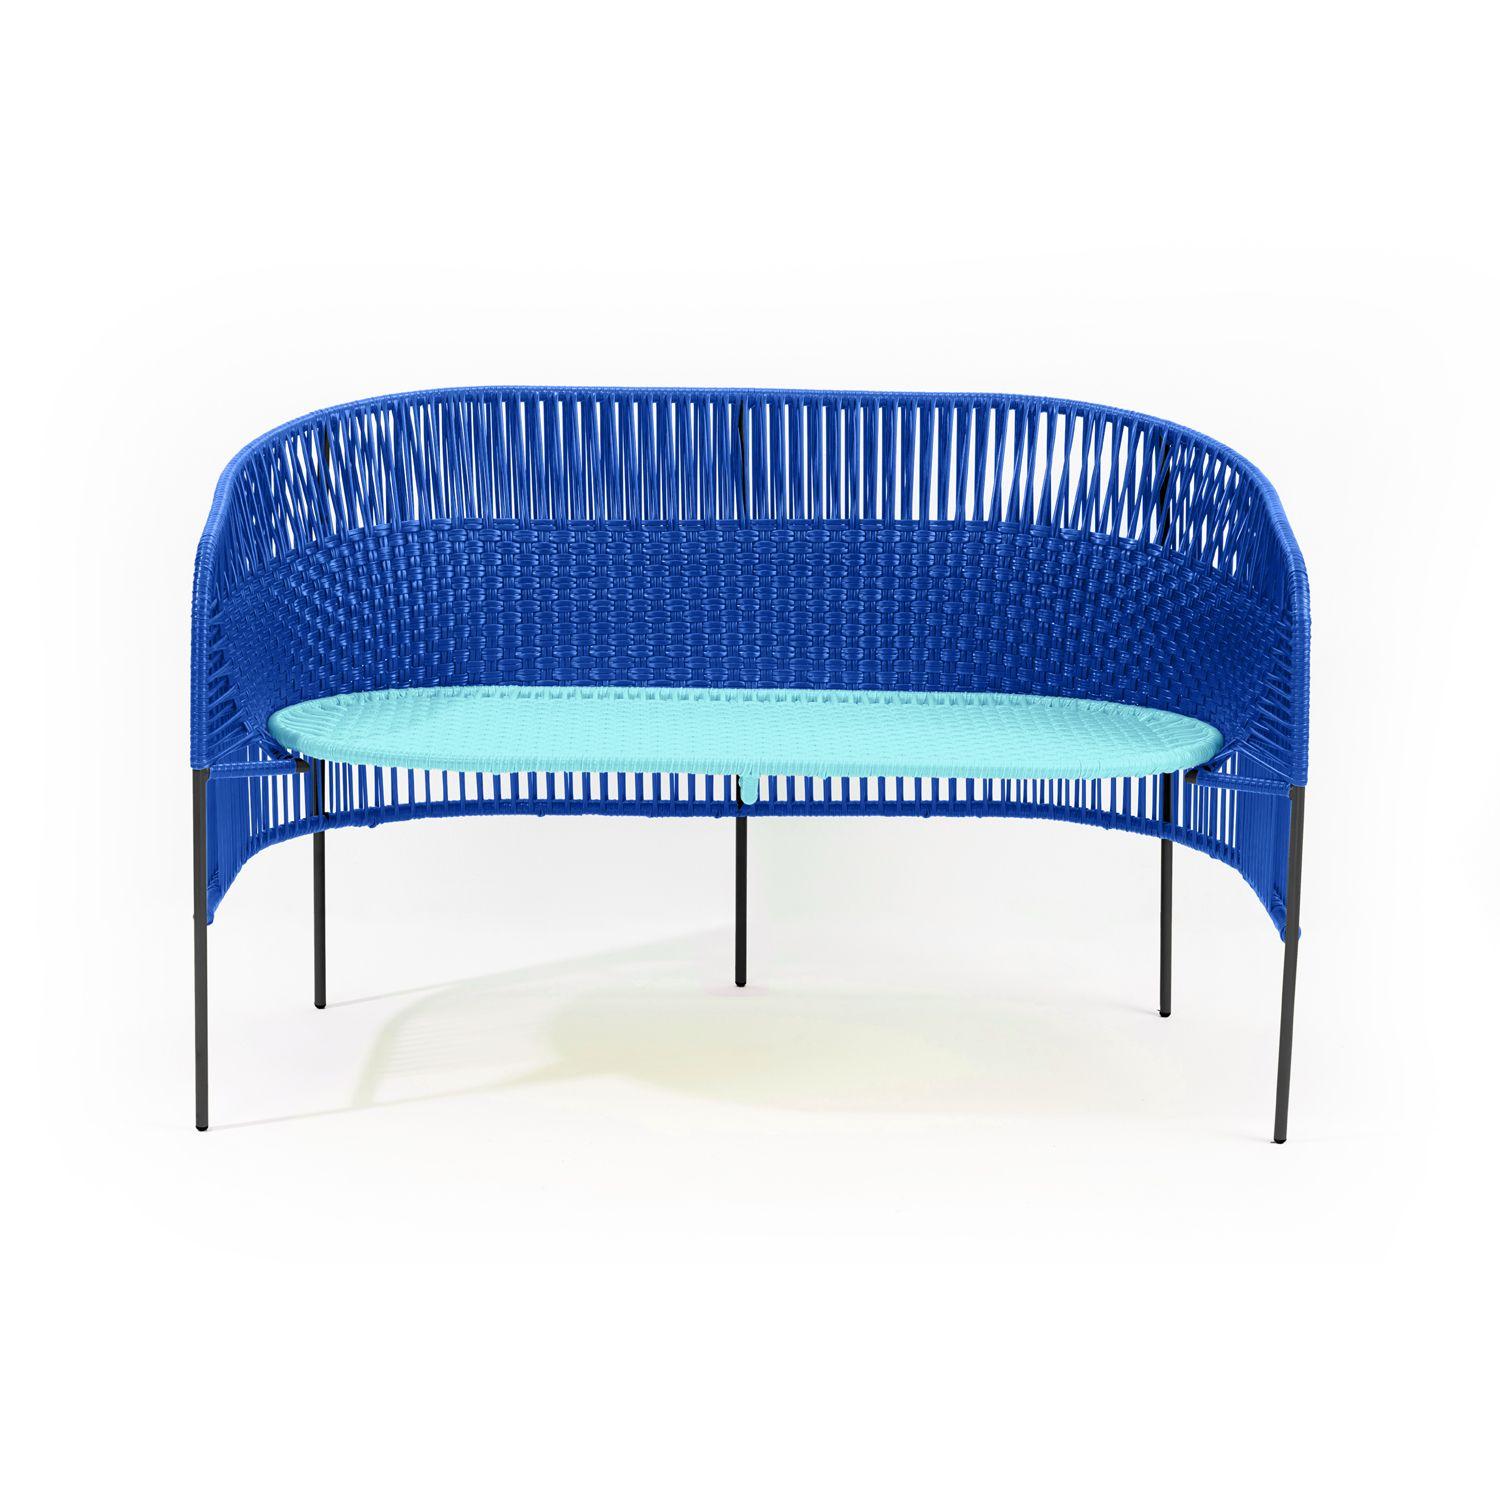 Die elegante Caribe 2-Sitzer-Bank ist ein farbenfrohes Design für Sitzgruppen im Innen- und Außenbereich. Es ist Teil der Caribe Collection, die von Sebastian Herkner für ames entworfen wurde. Die deutsche Designerin besuchte Kolumbien zusammen mit